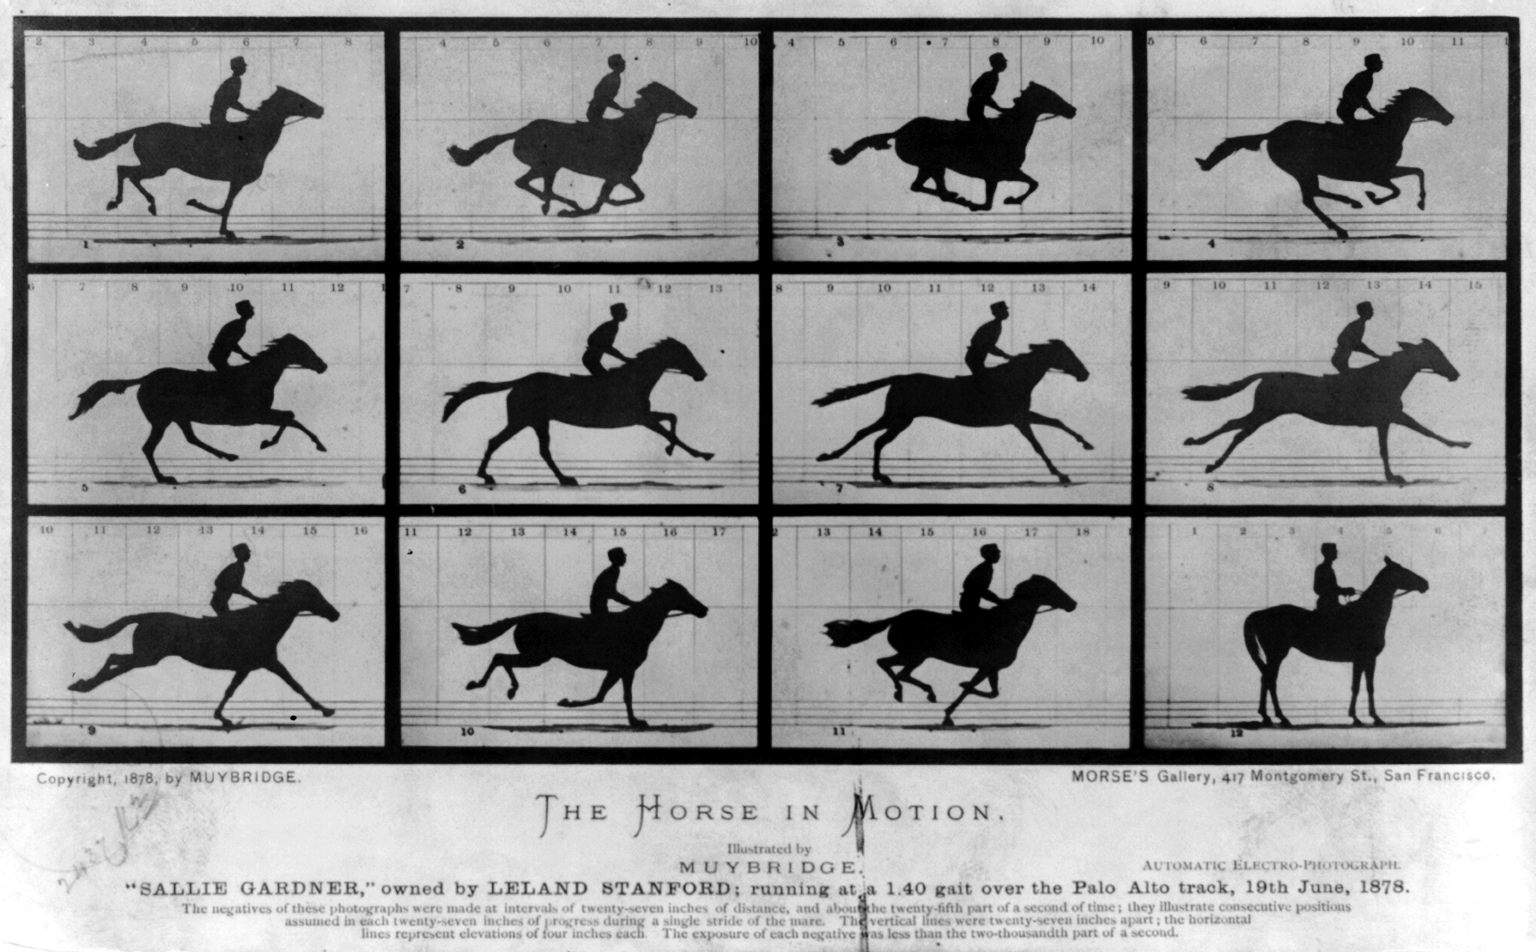 The-Horse-in-Motion-by-Eadweard-Muybridge-1878.jpg